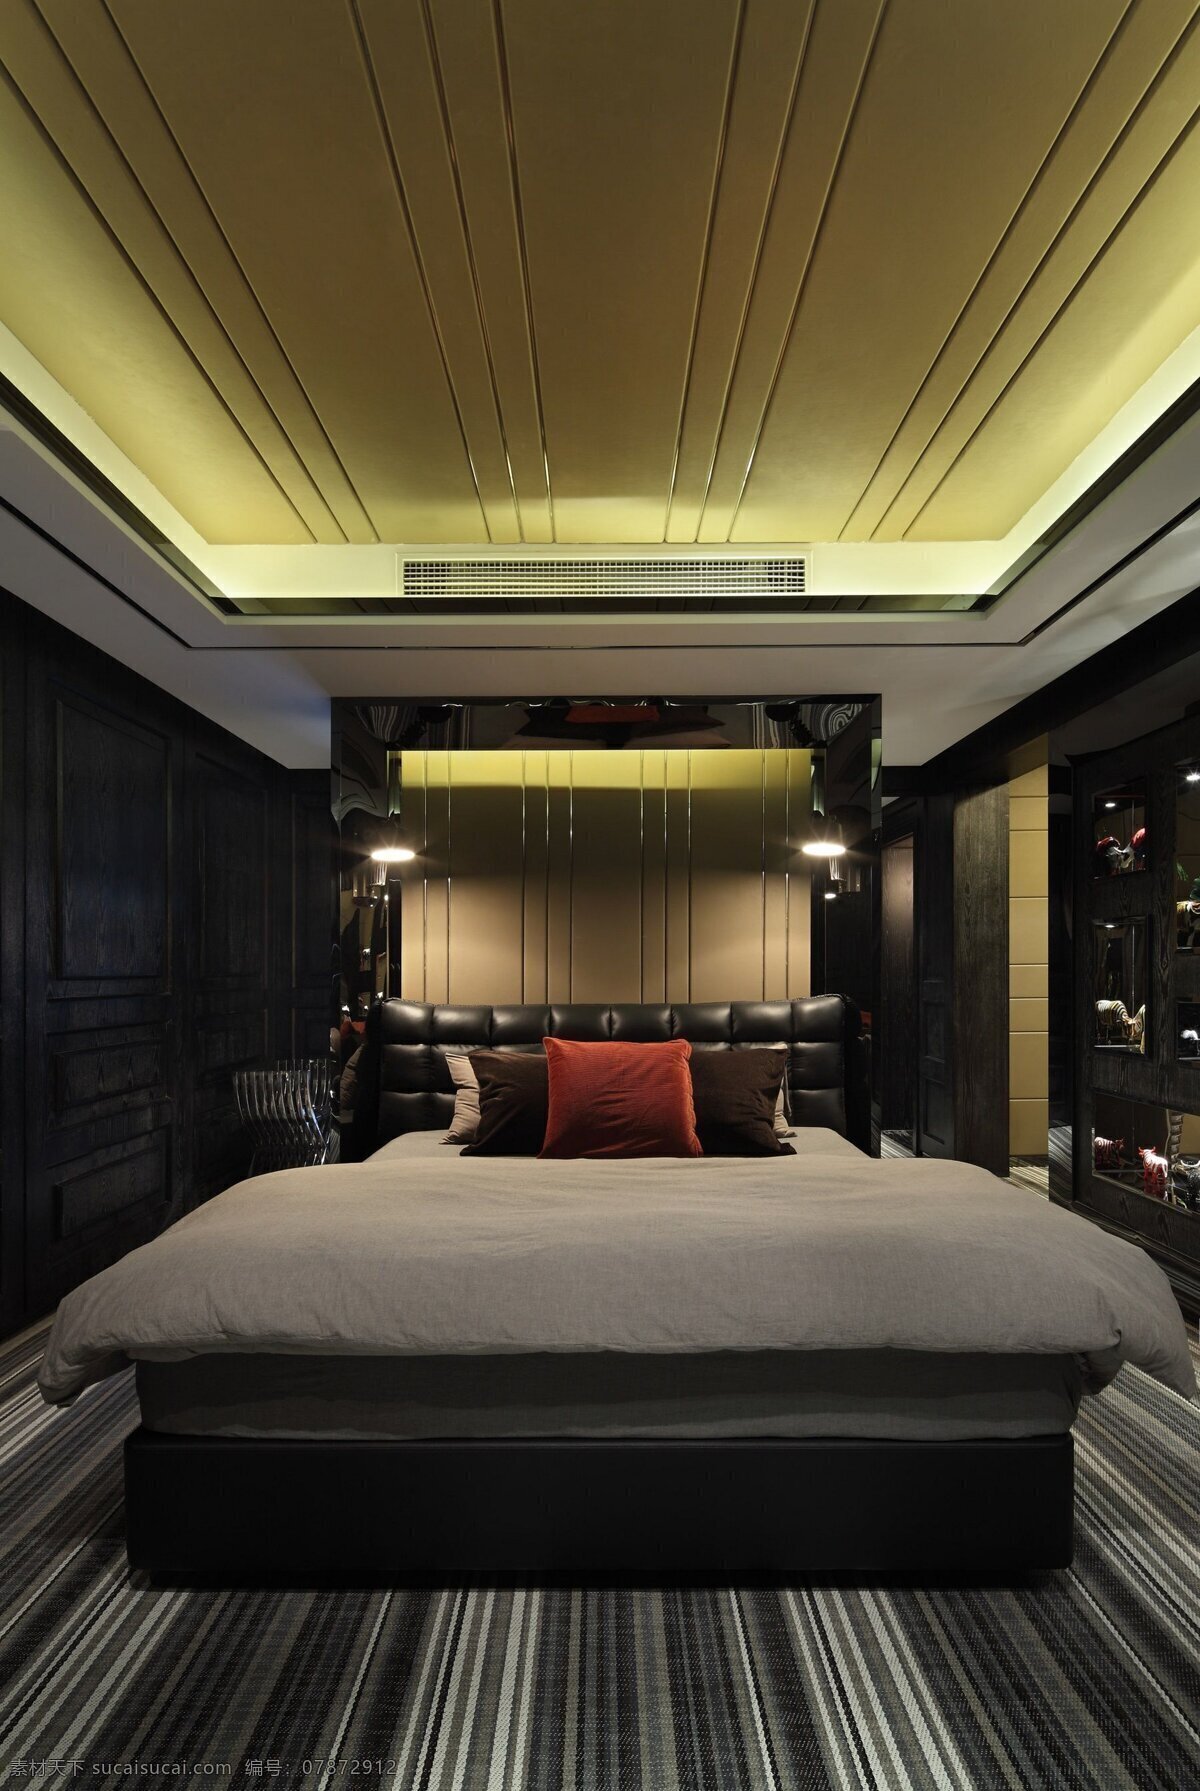 简约 风 室内设计 卧室 天花板 效果图 现代 床 条纹地板 家装